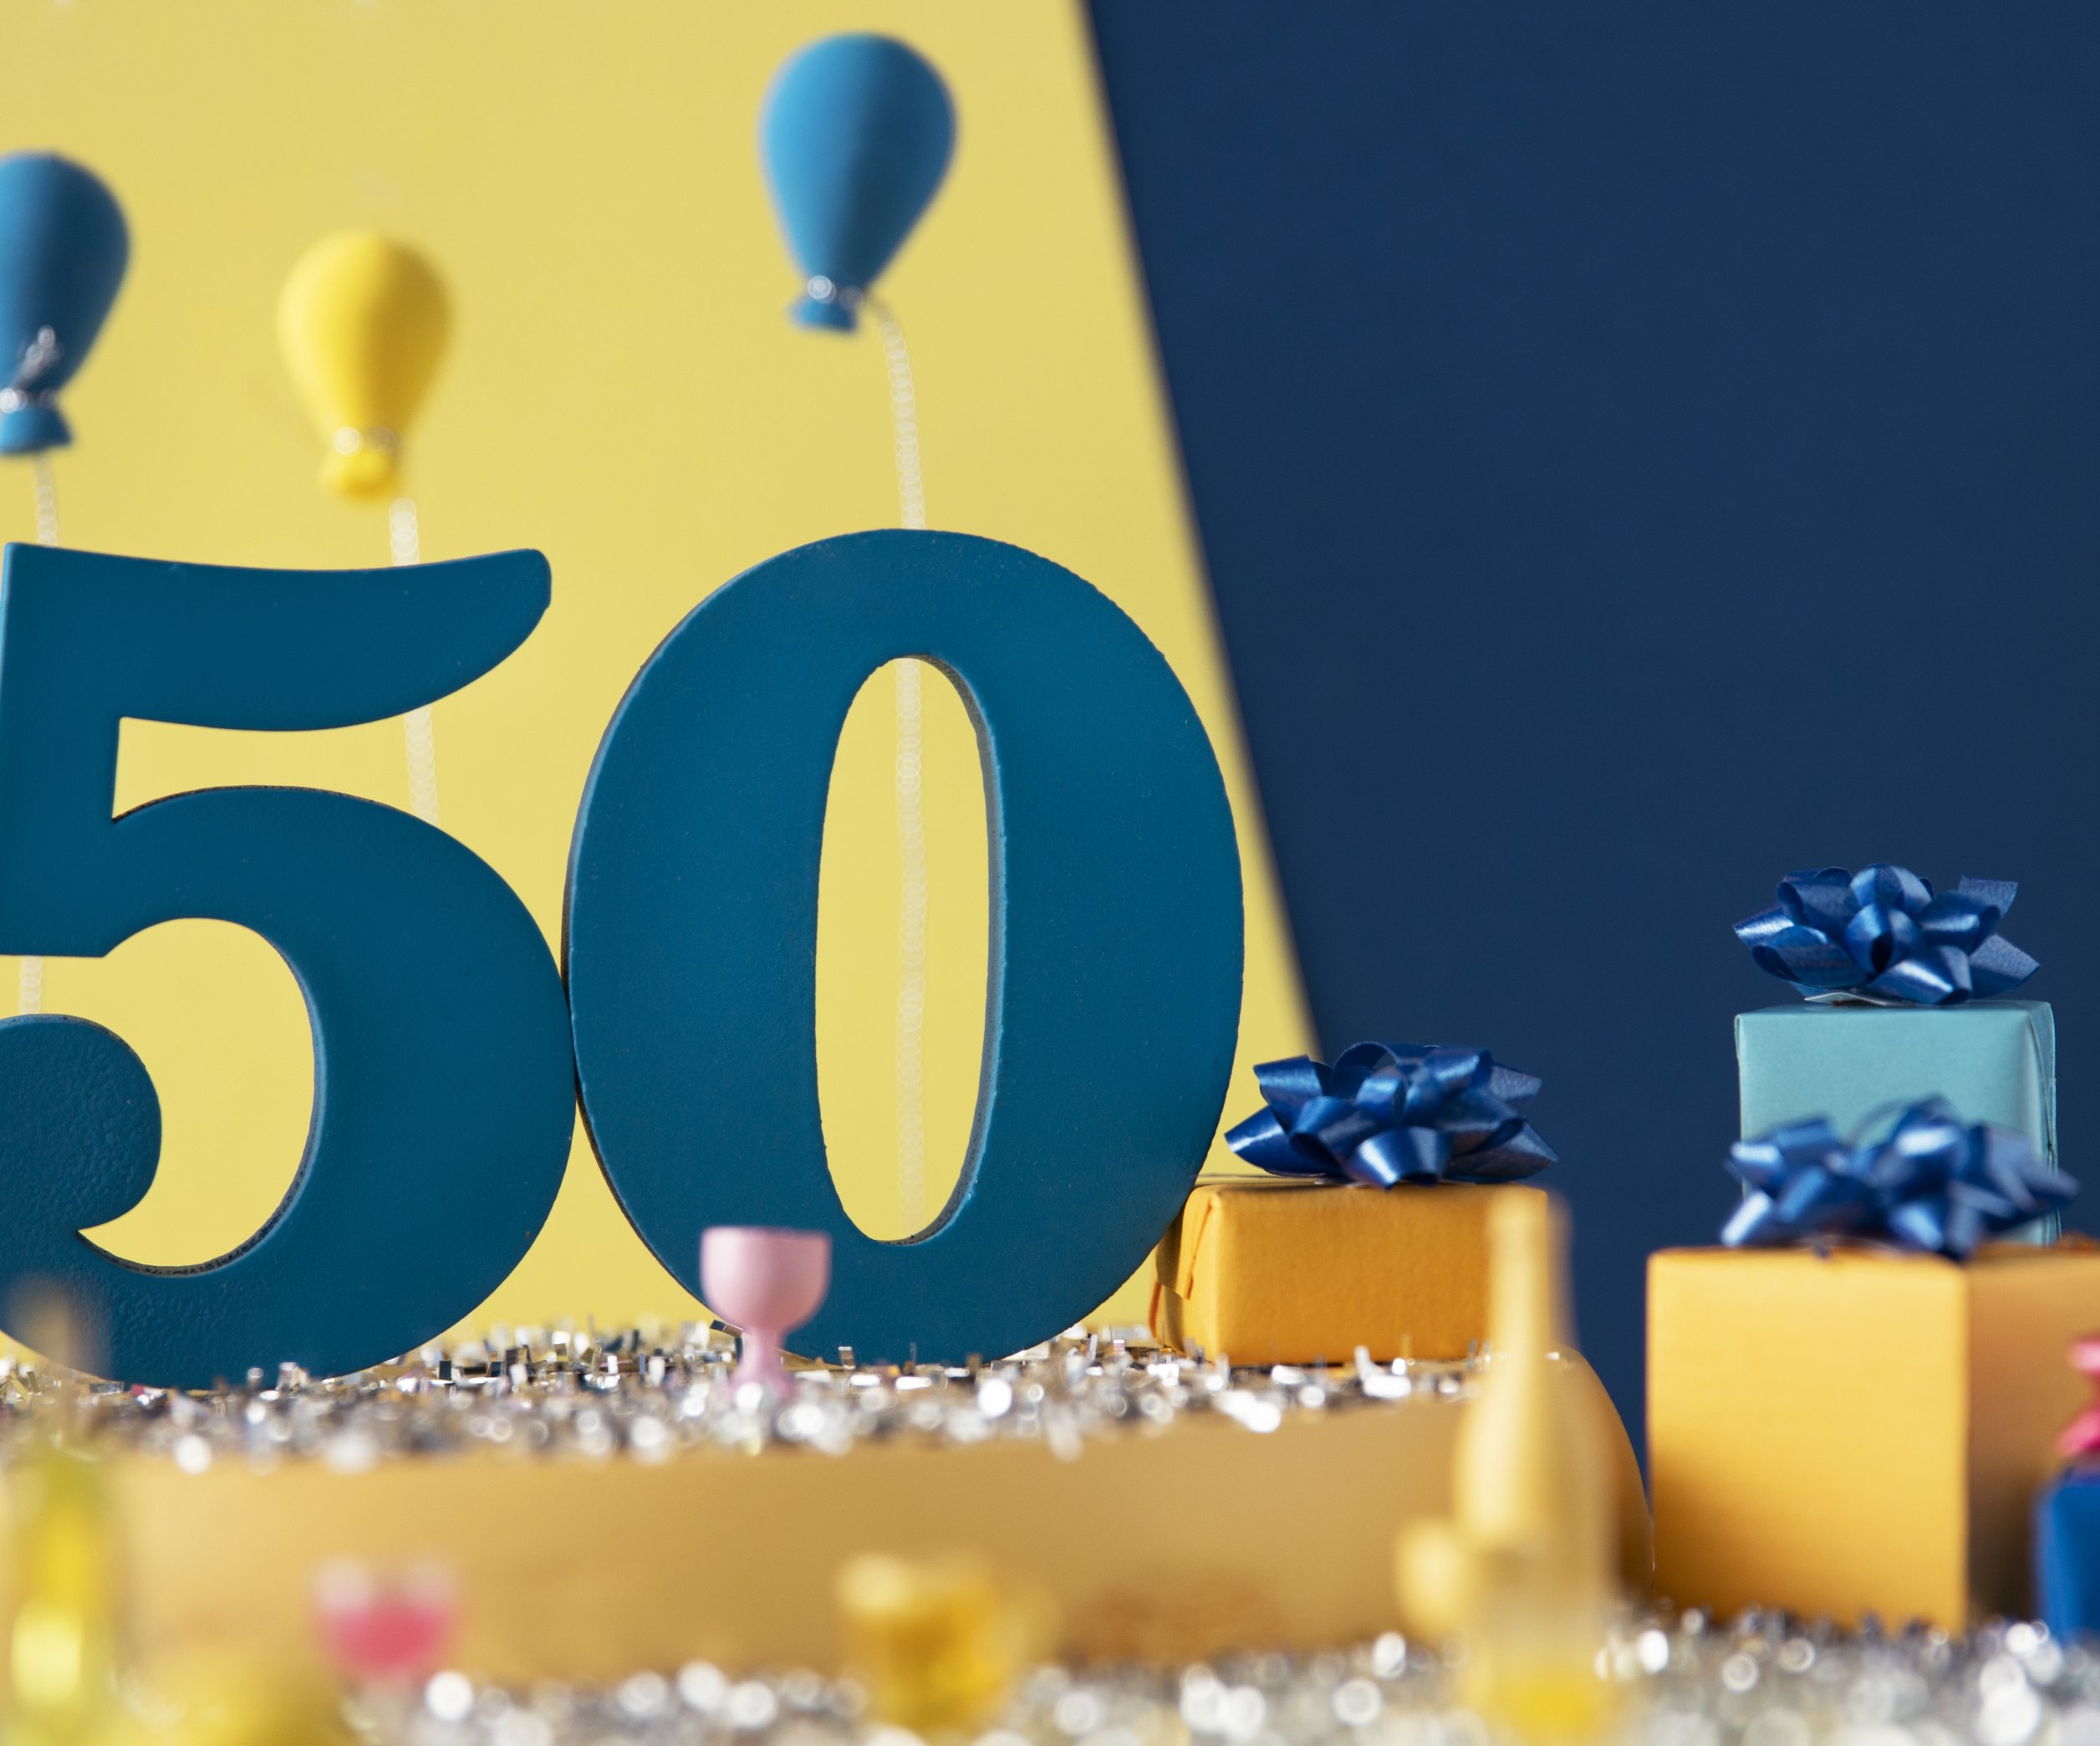 Поздравления днем рождения мужчине 50 лет прикольные — сценарии 50 лет мужчине конкурсы